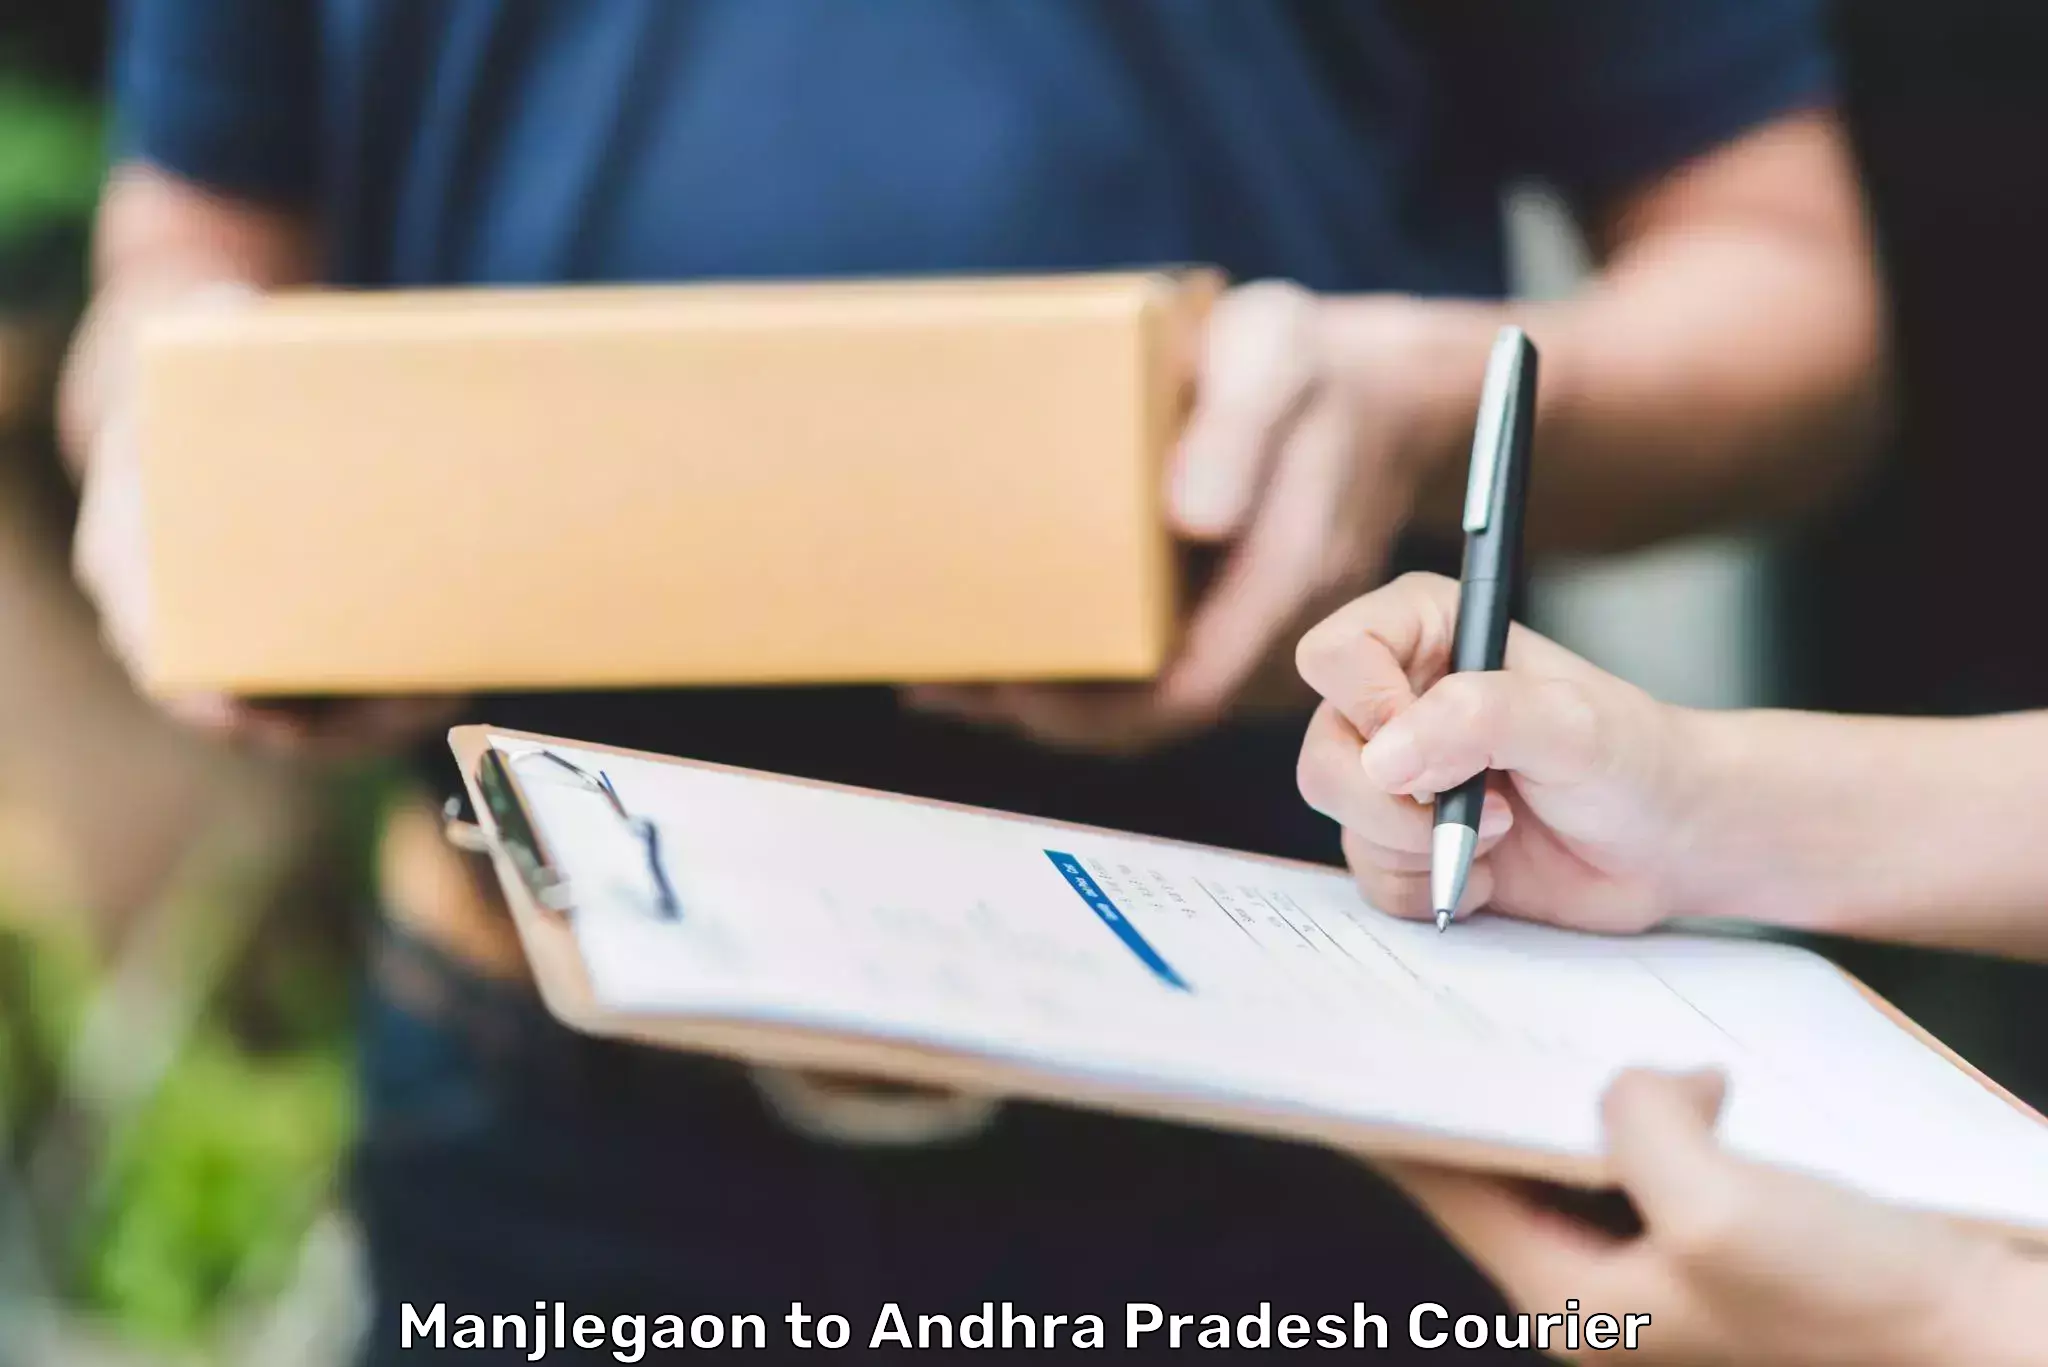 Secure packaging Manjlegaon to NIT Andhra Pradesh